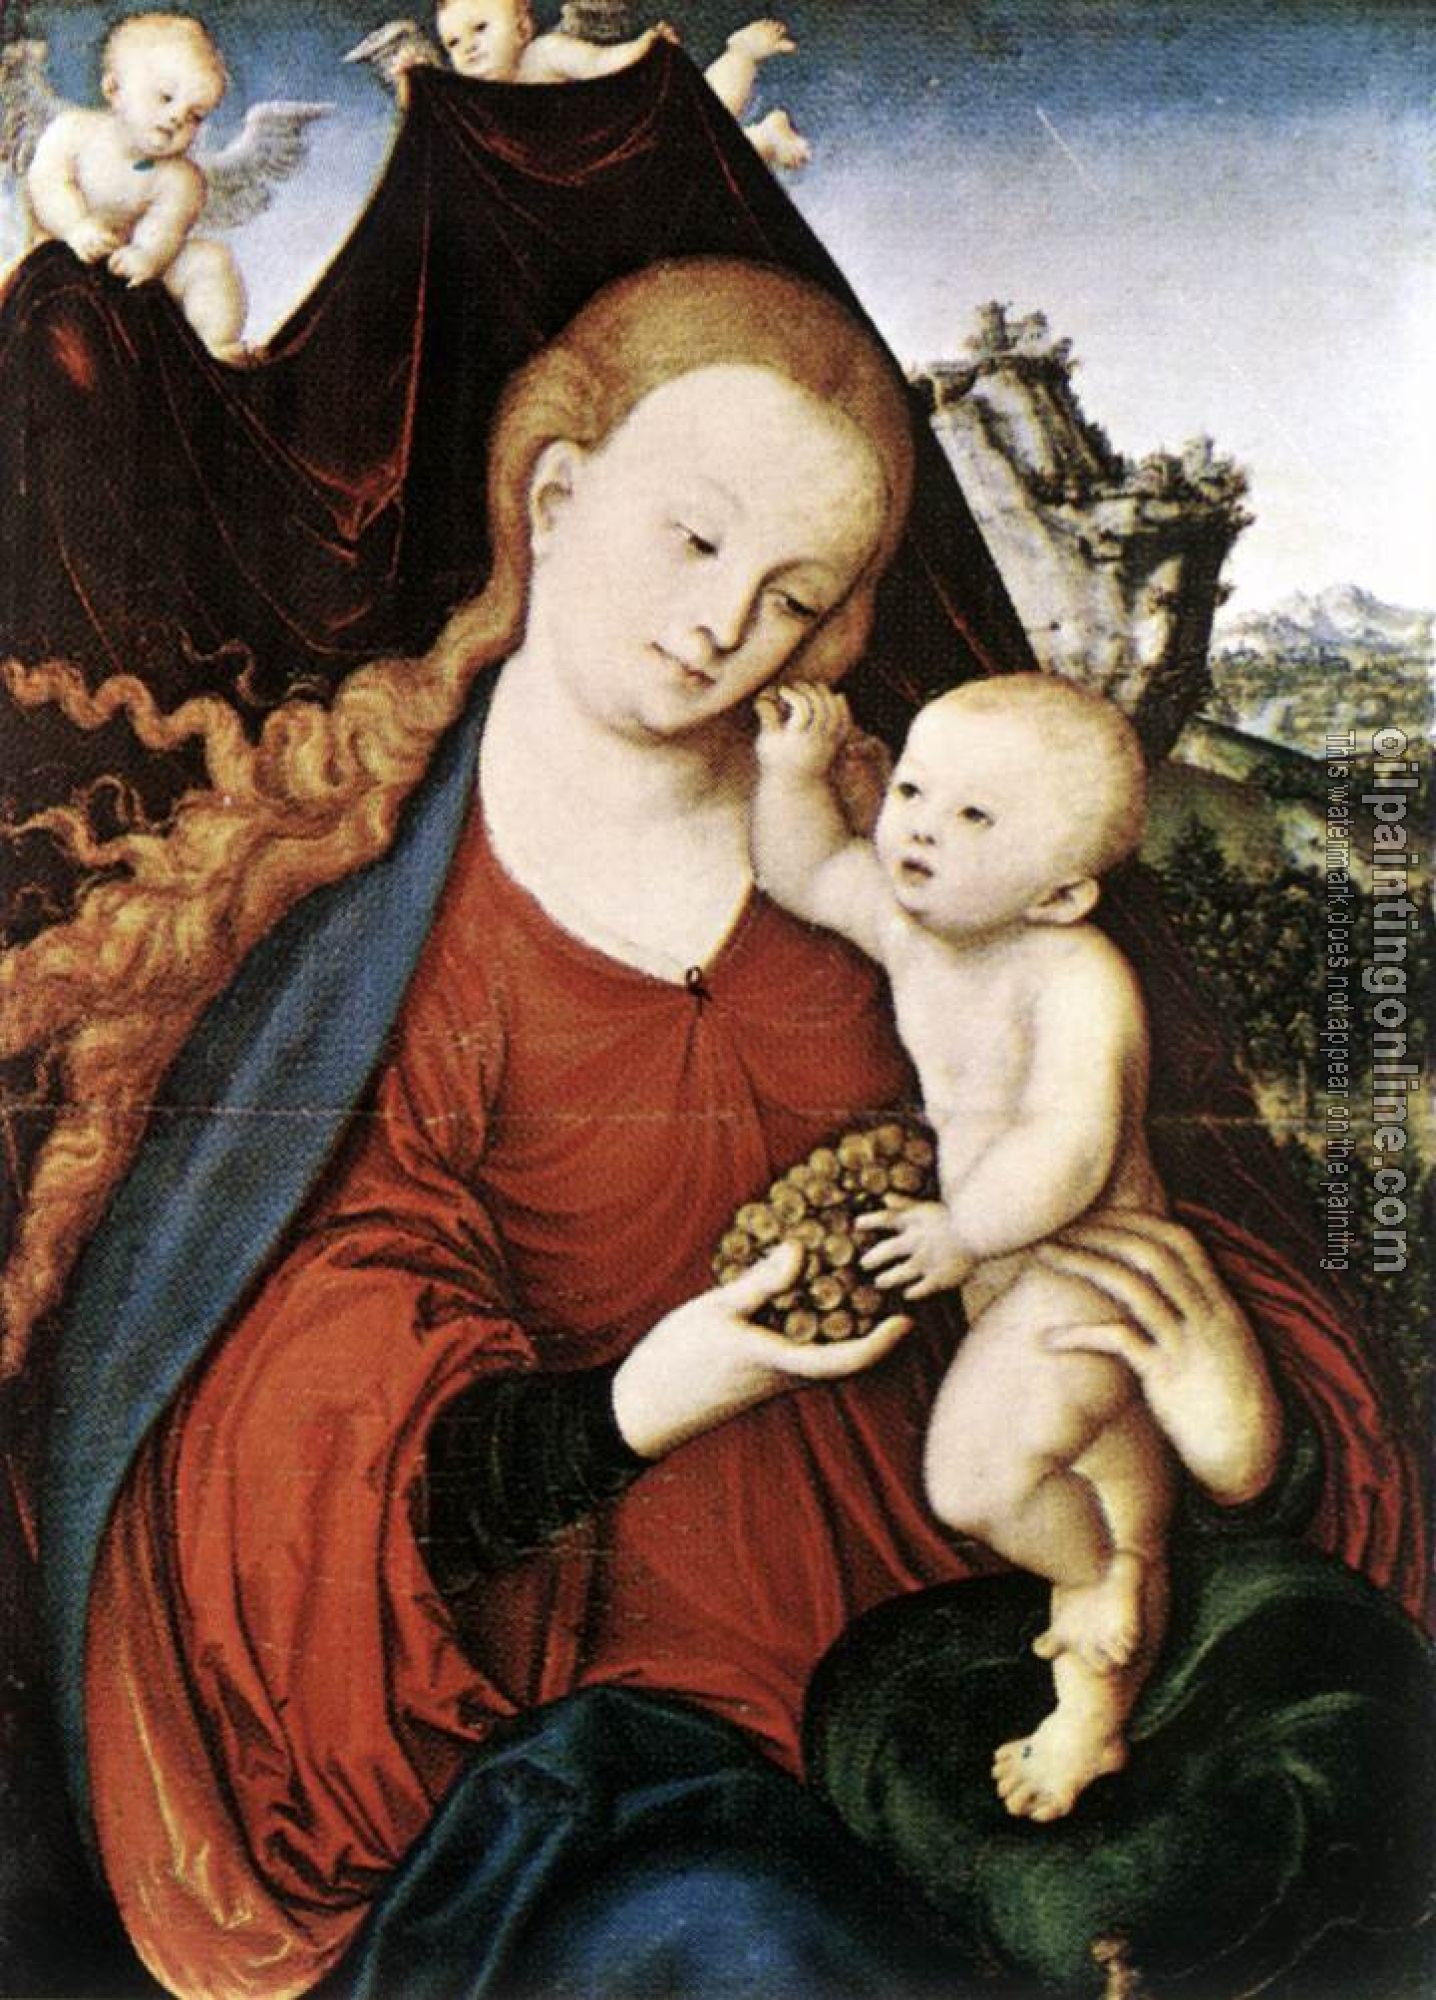 Lucas il Vecchio Cranach - Madonna and Child